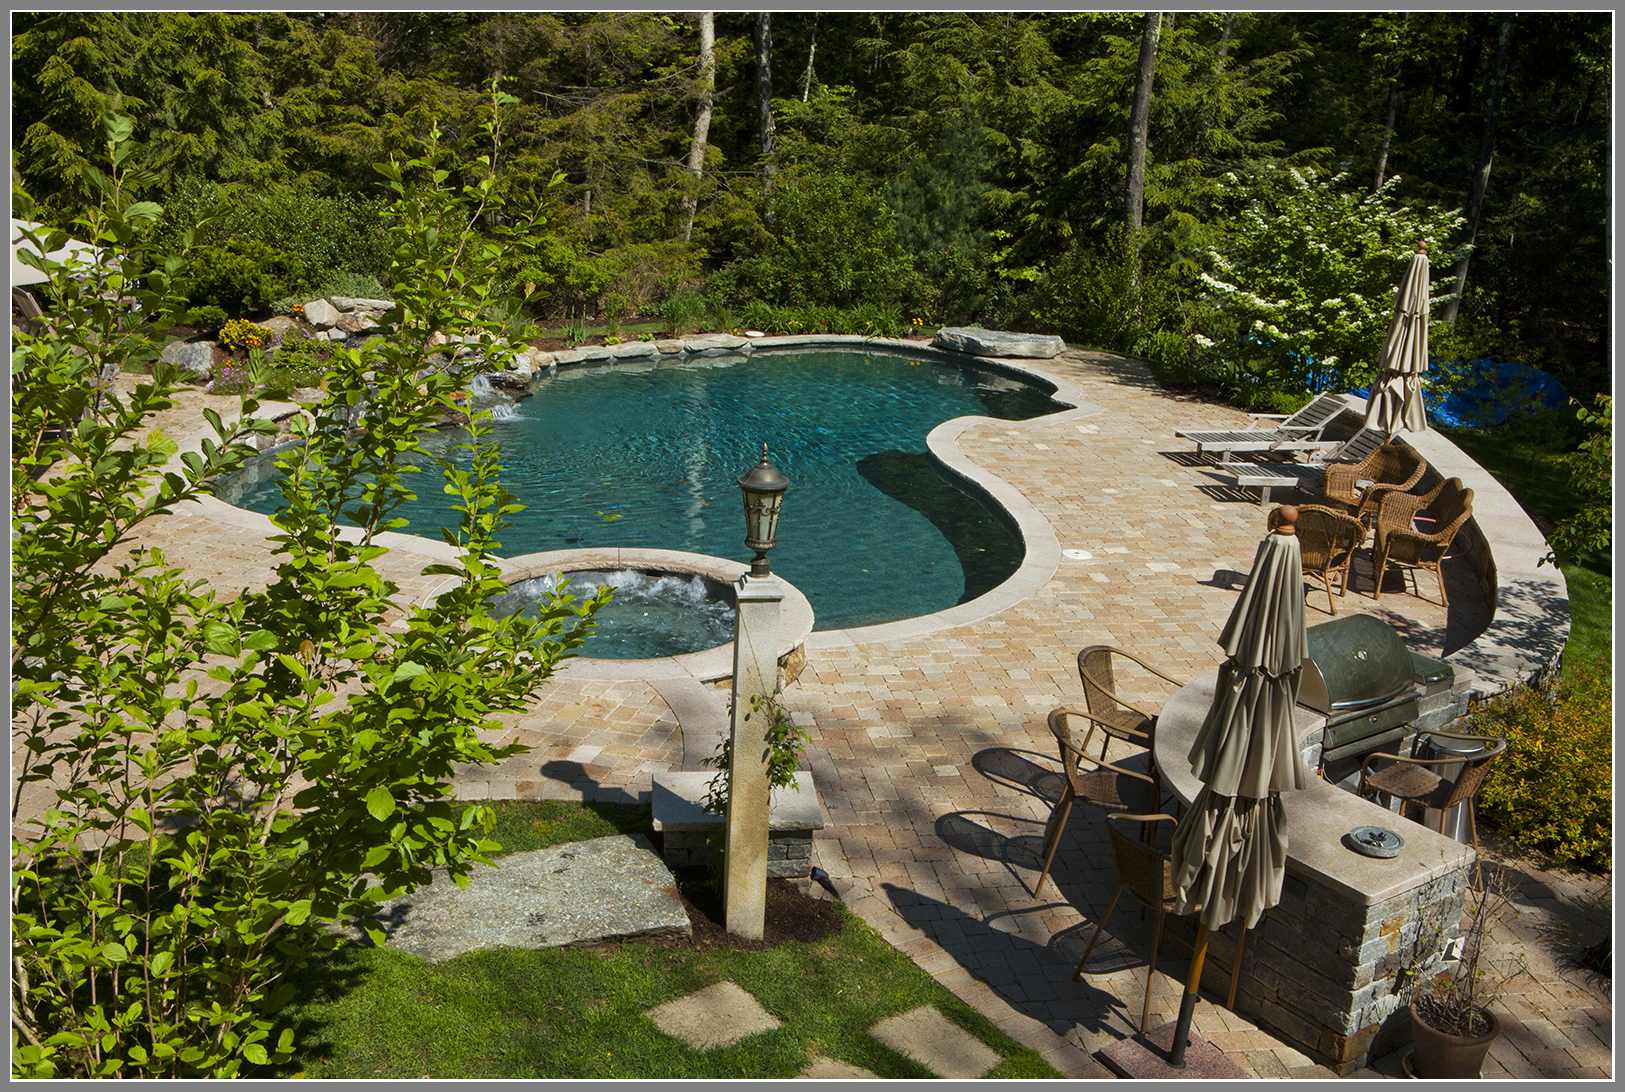 More than a pool-a backyard paradise